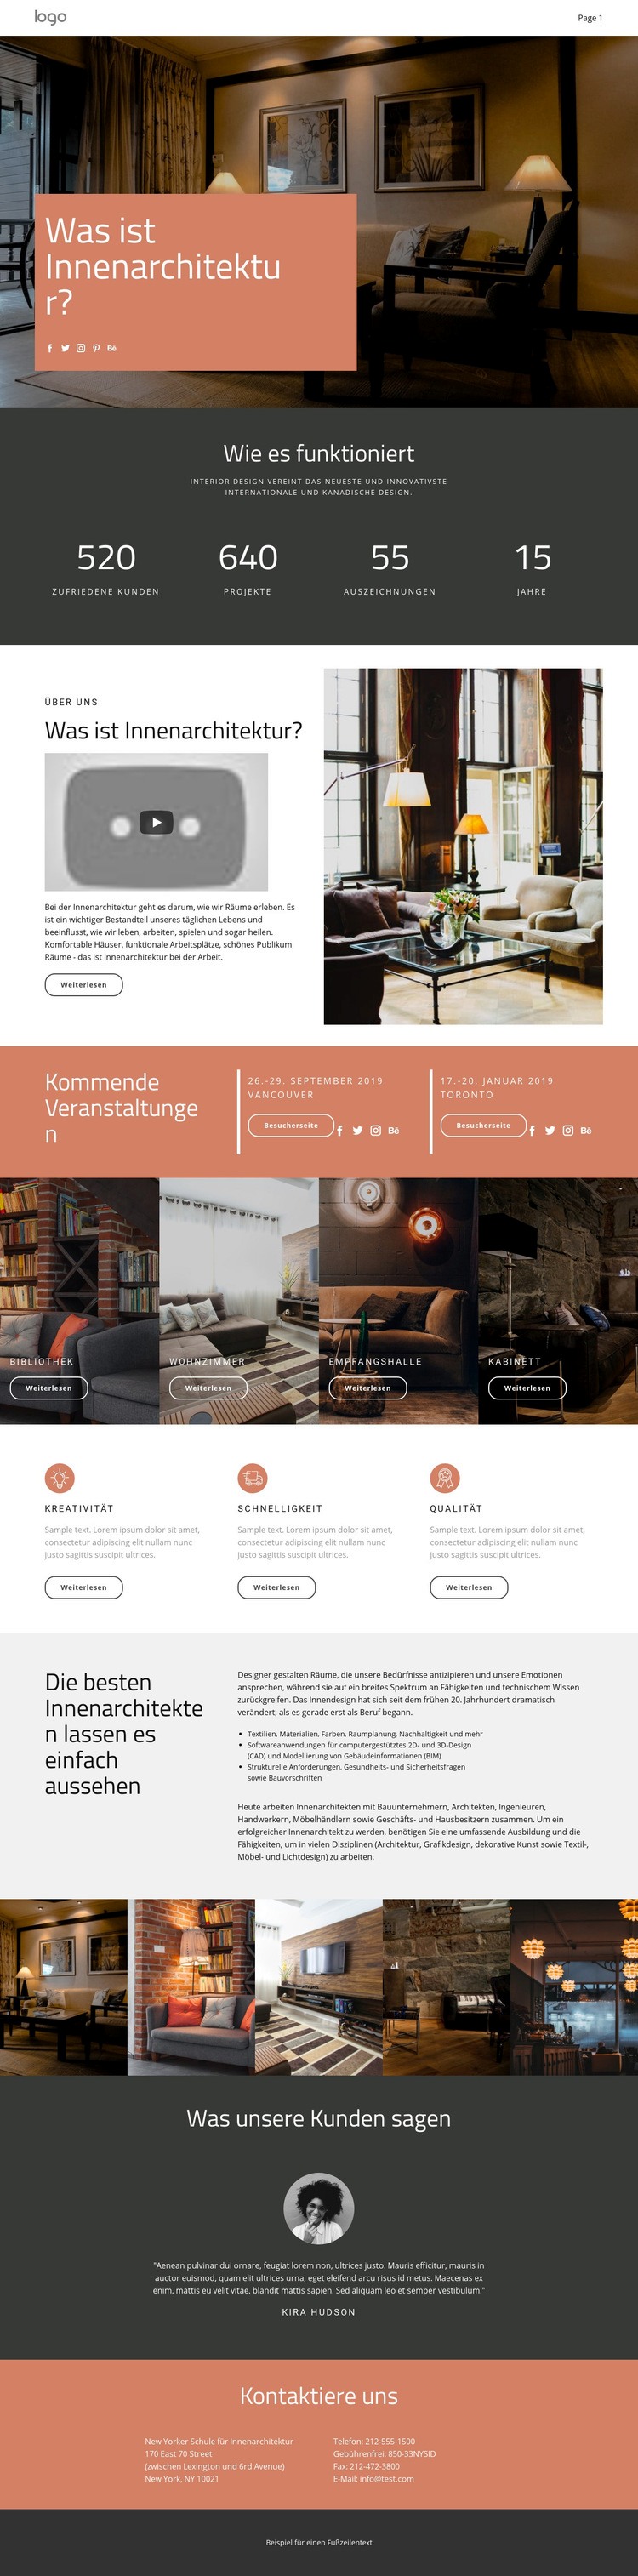 Gestaltung von Häusern und Wohnungen Website design